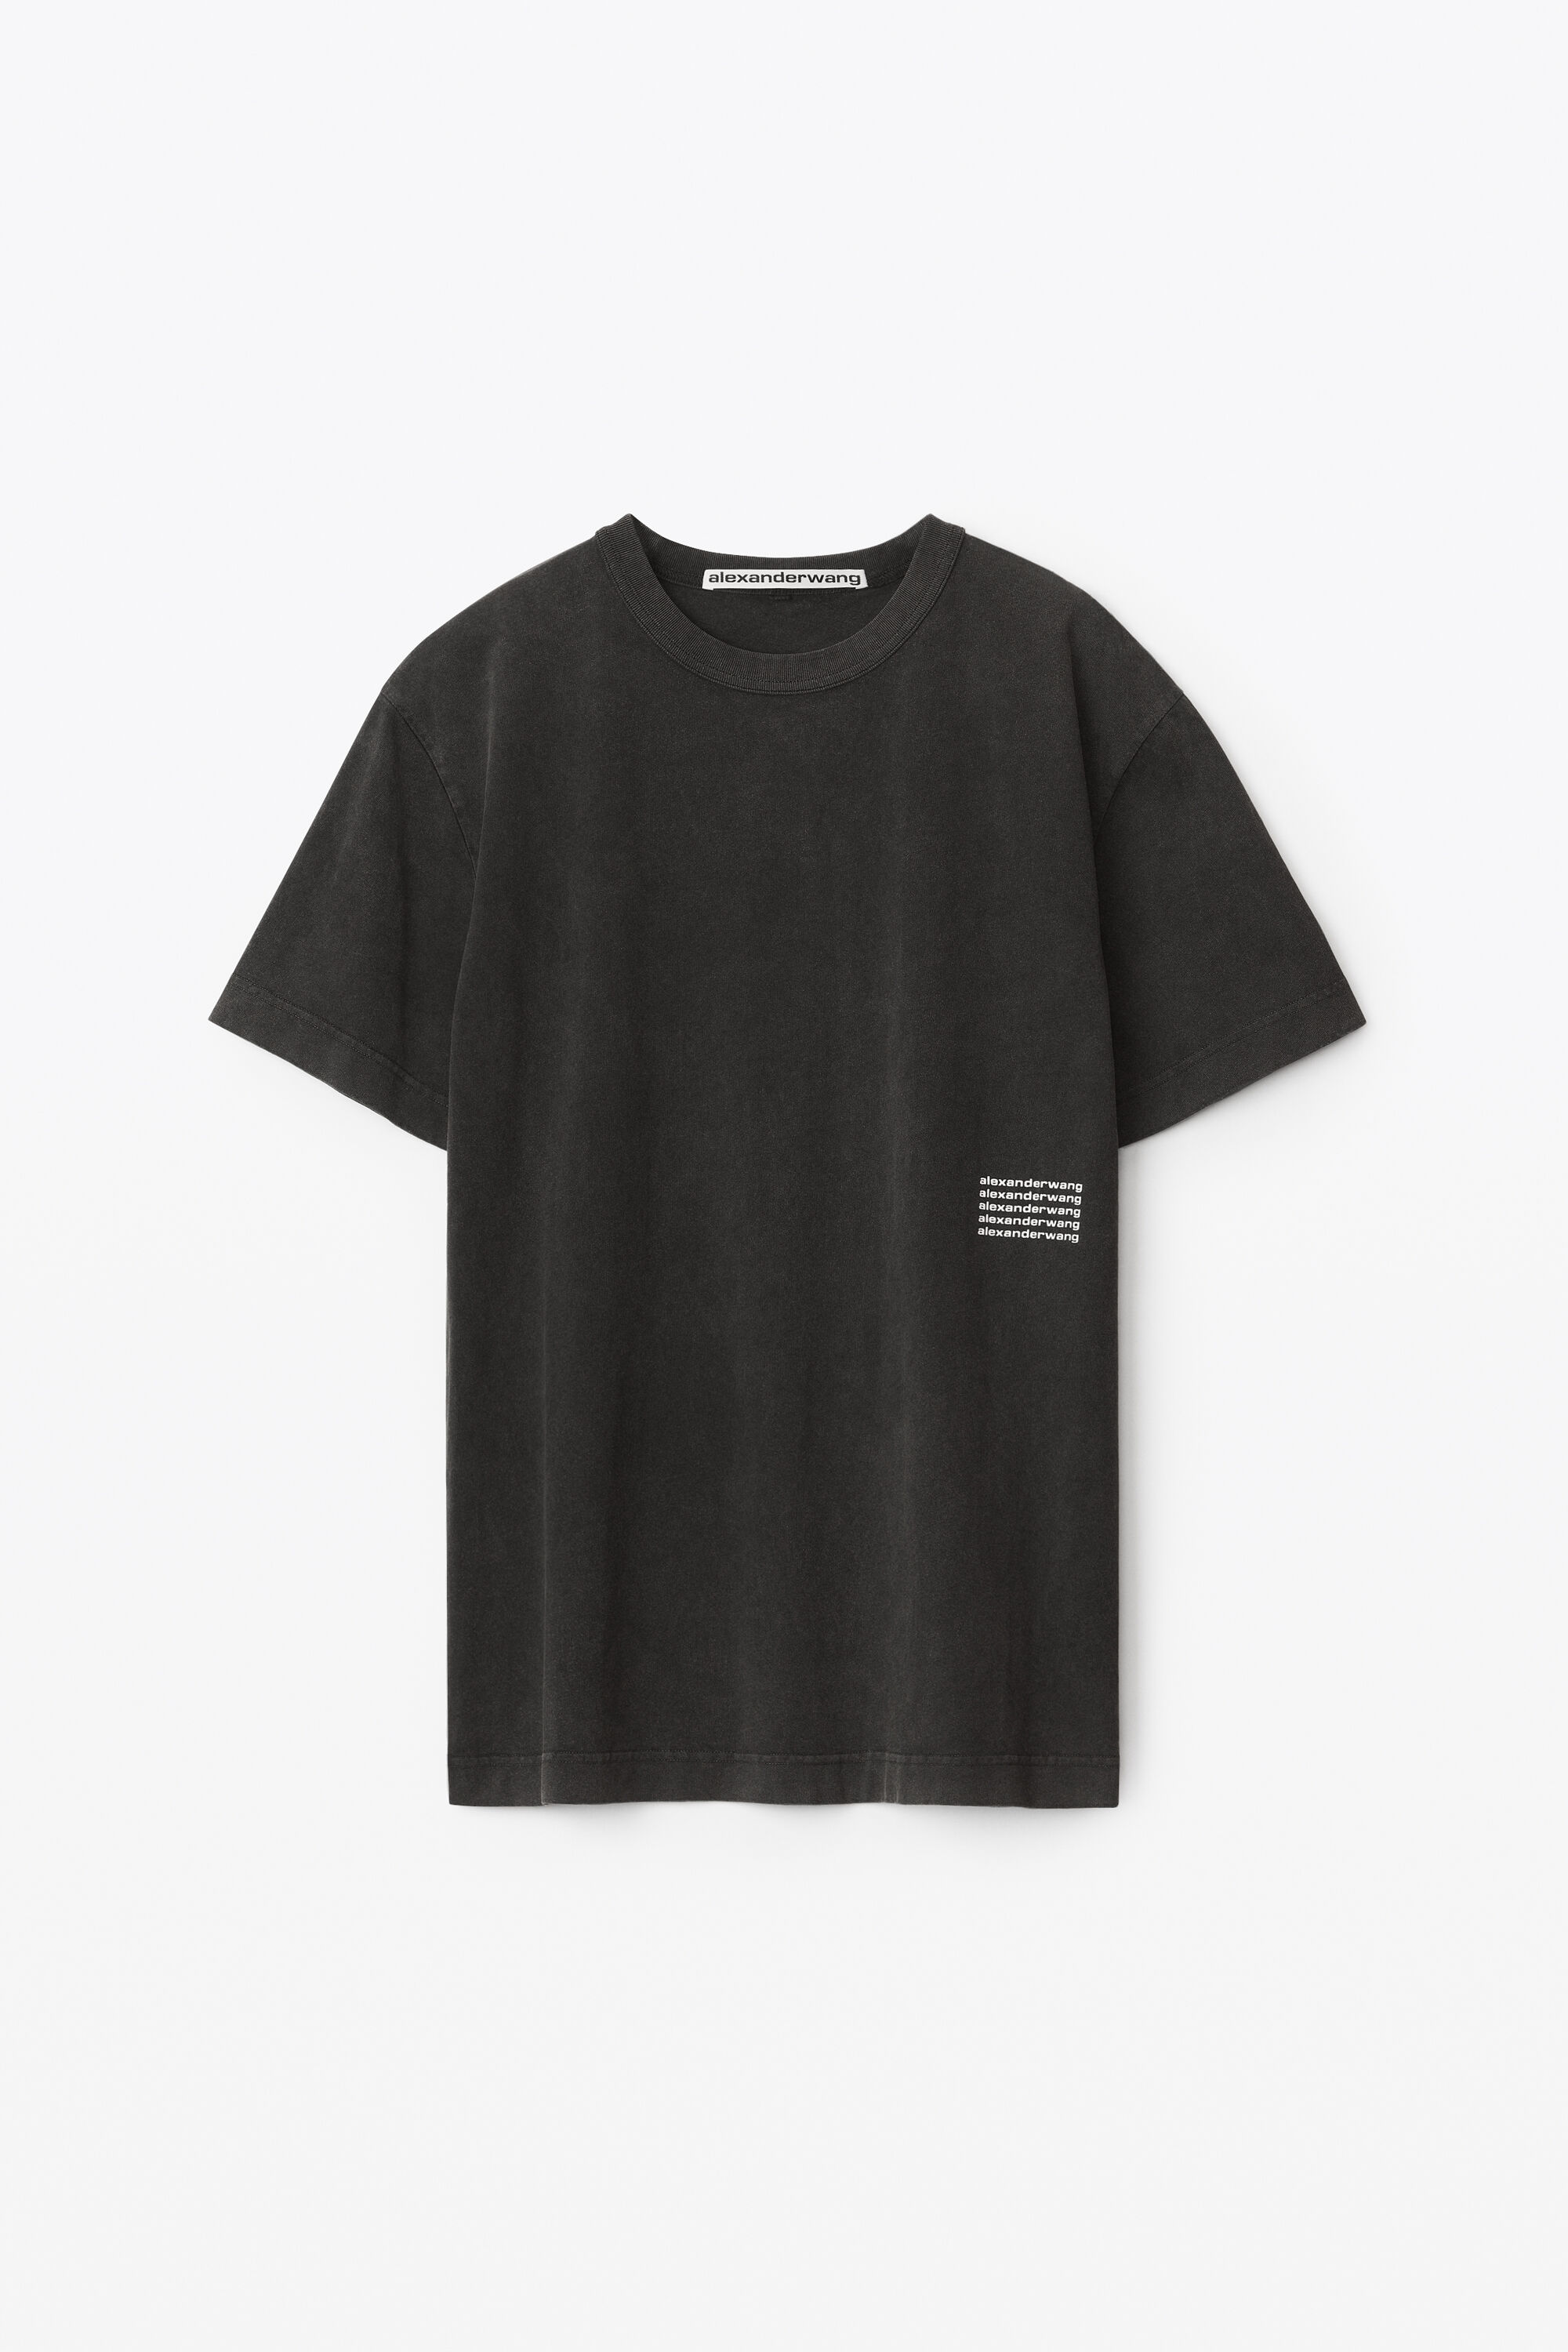 送料無料】 アウゼア メンズ Tシャツ トップス T-shirts Black-